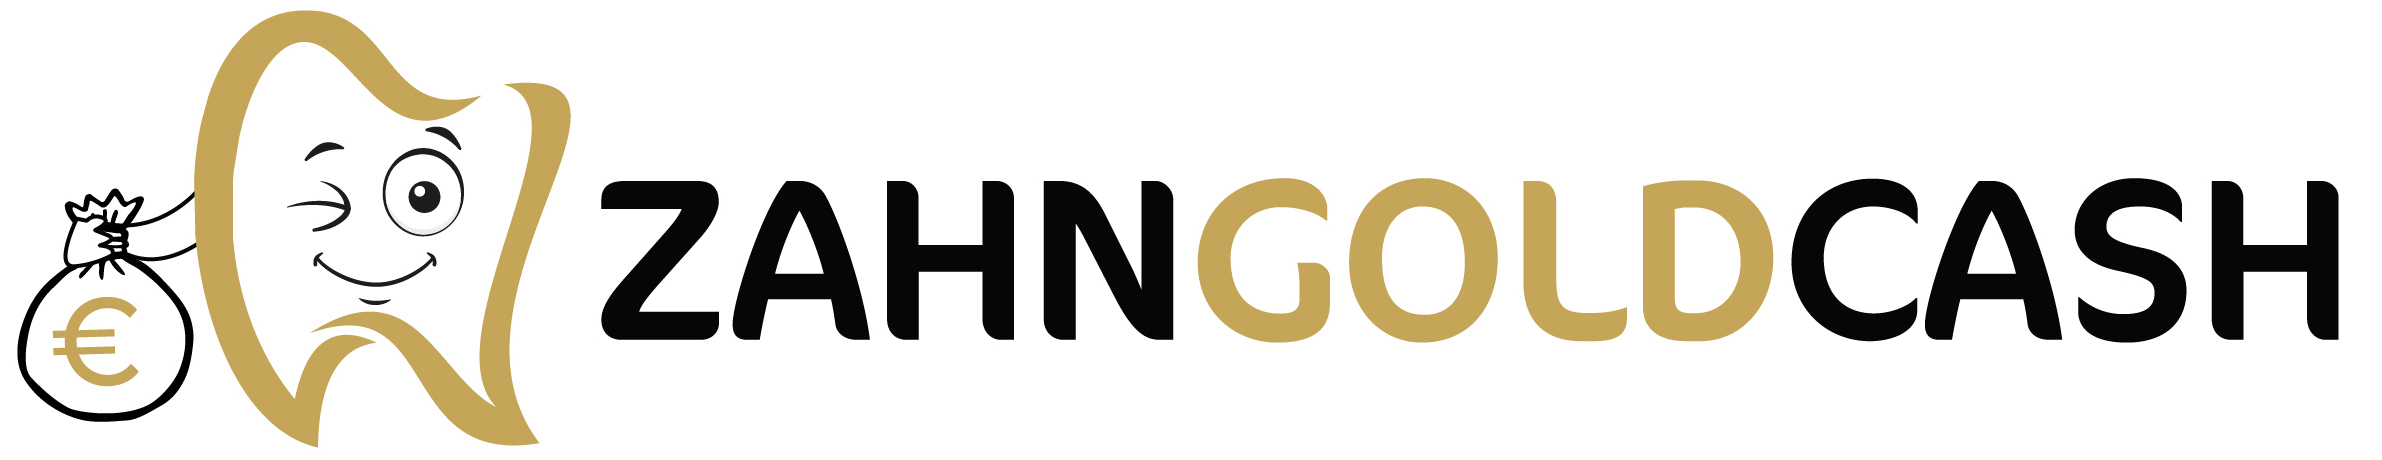 Zahngoldcash Logo